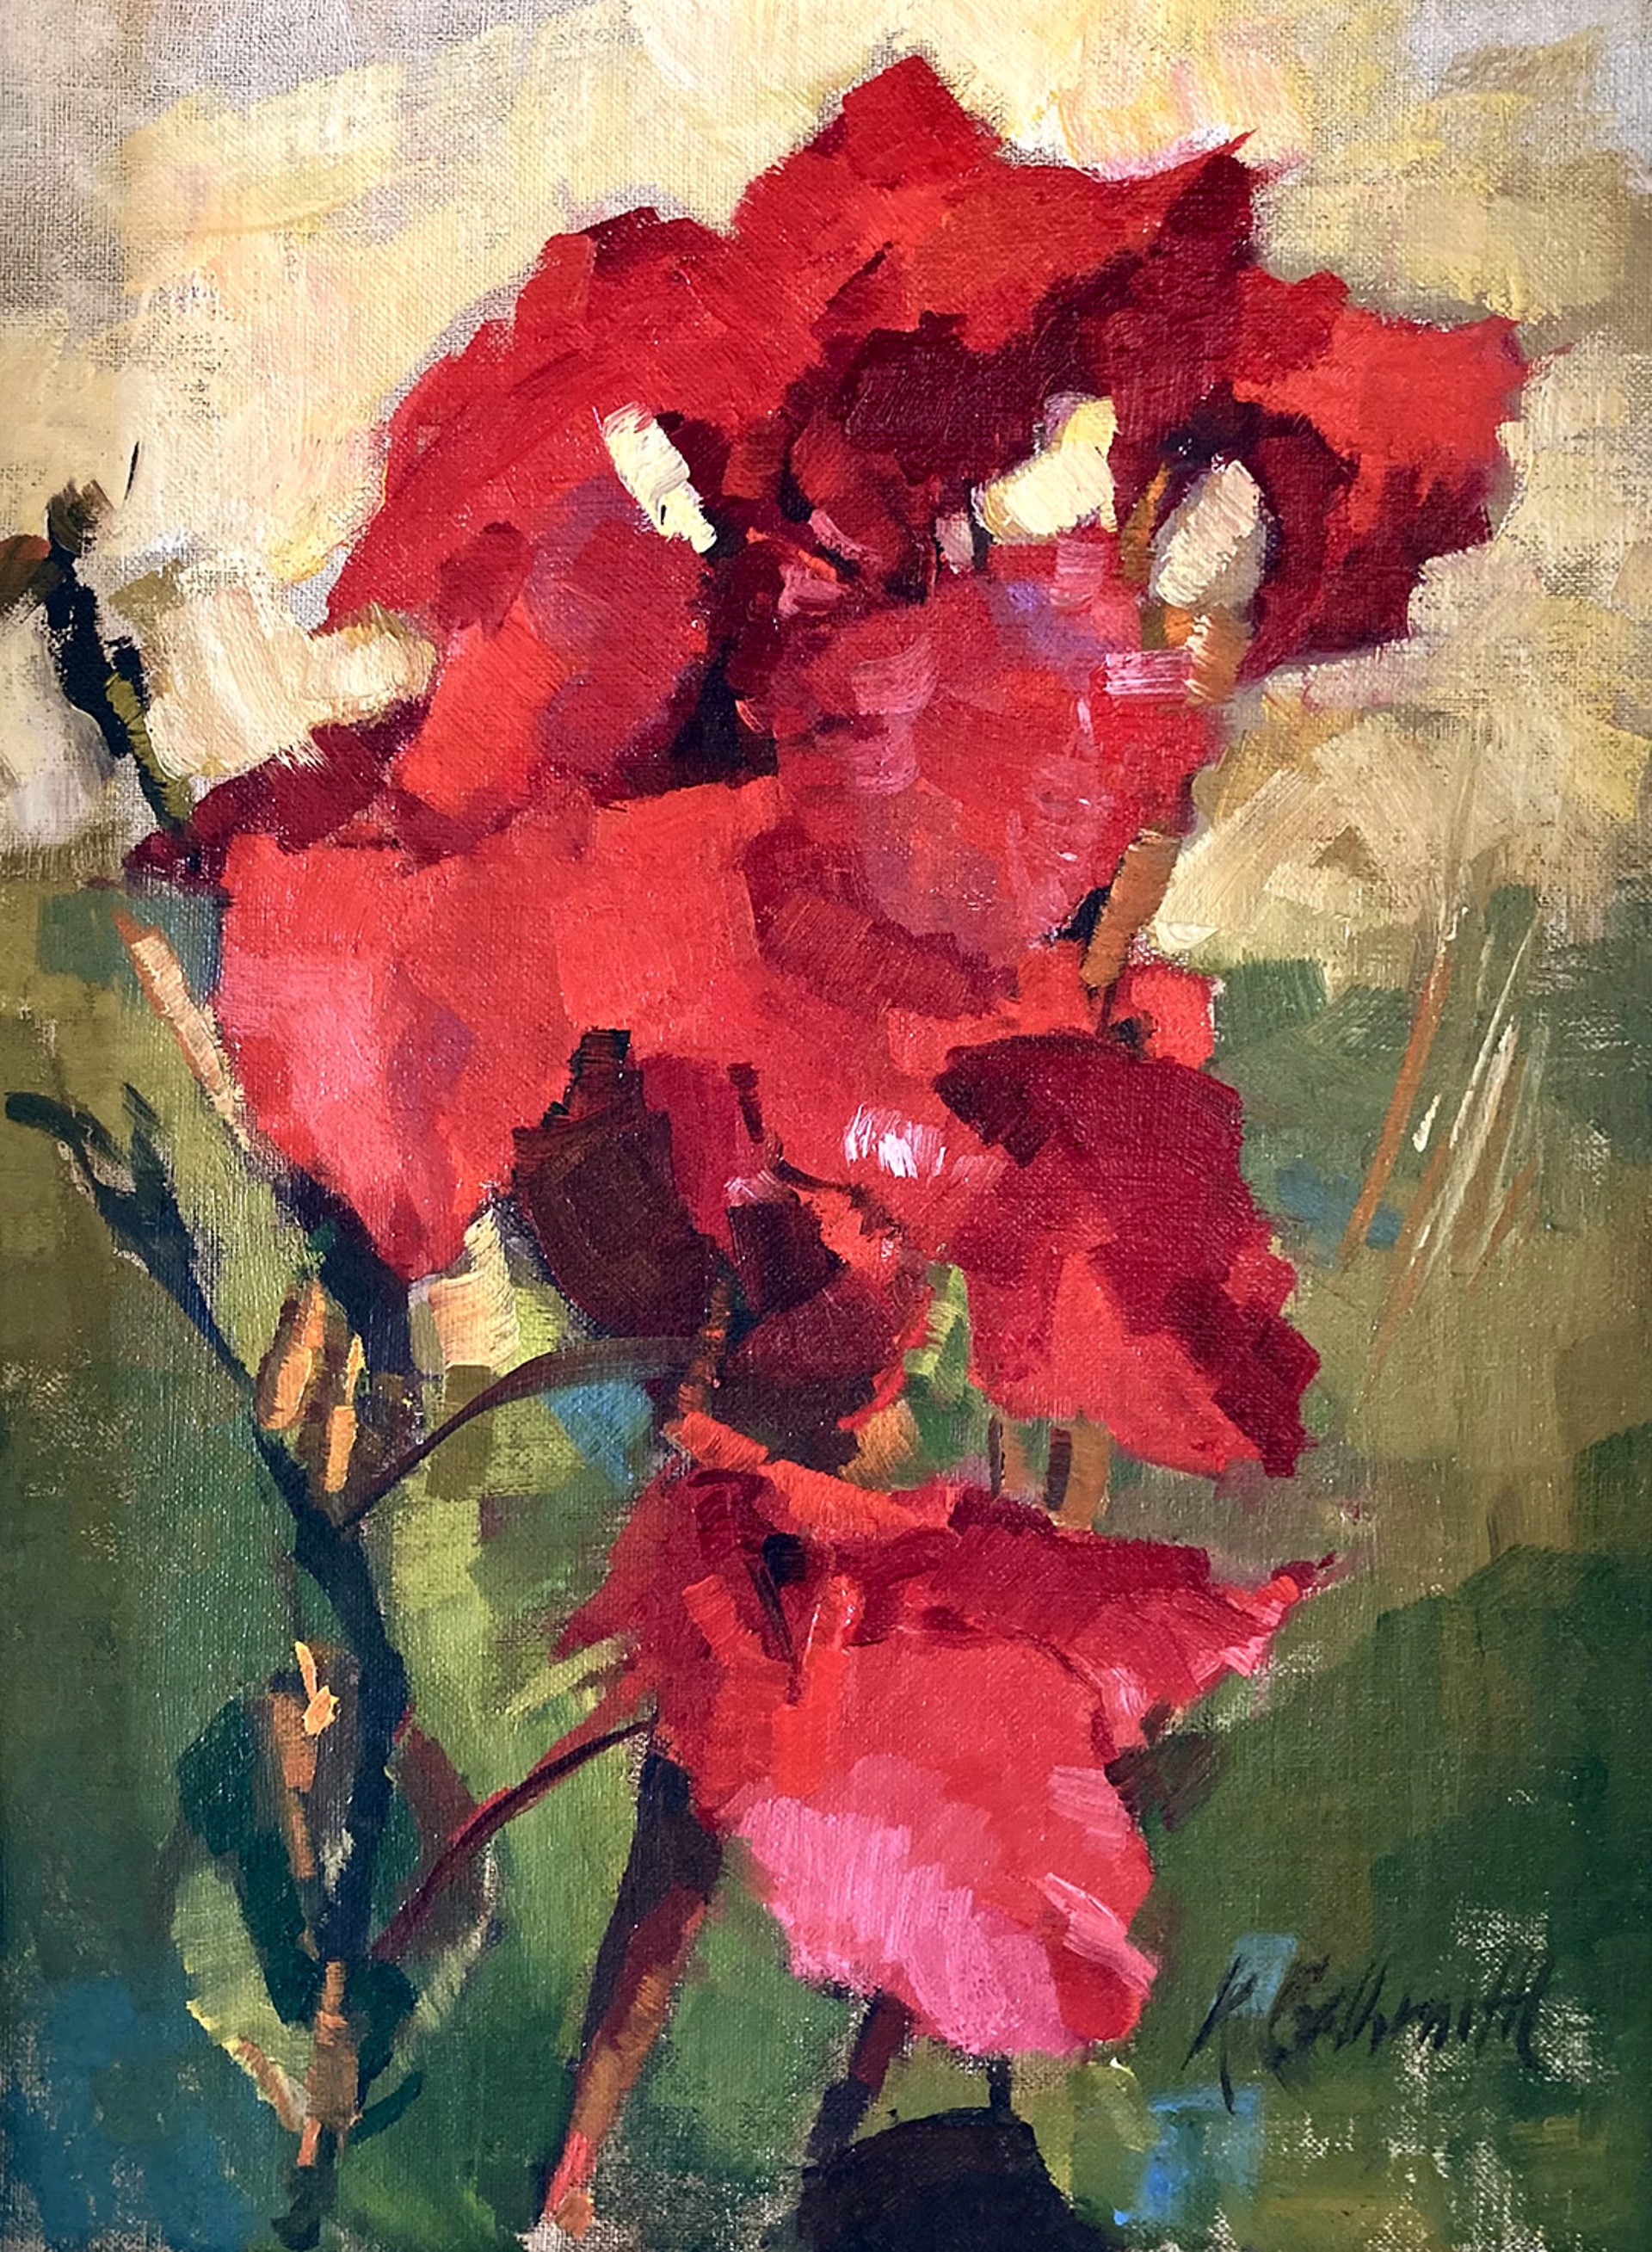 Canna Lilies by Katherine Galbraith